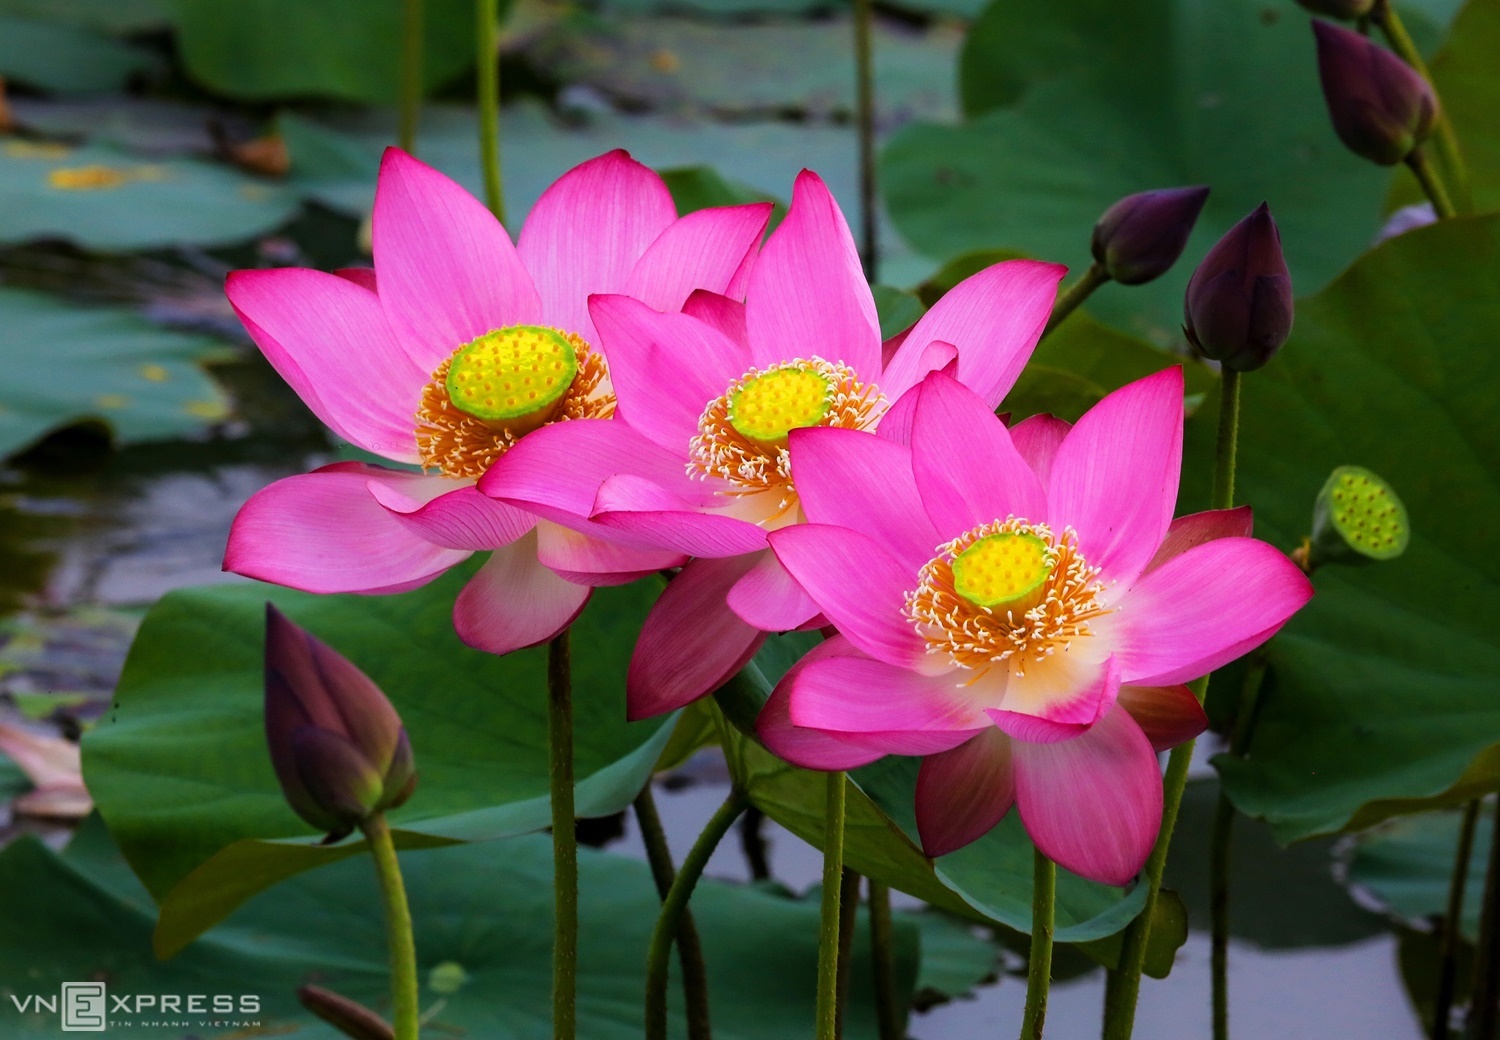 Những bông sen hồng mộc mạc, tỏa hương sắc giữa miền quê. Trong tâm thức người Việt, sen tượng trưng cho sự thanh khiết, luôn vươn dậy trong hoàn cảnh khó khăn.